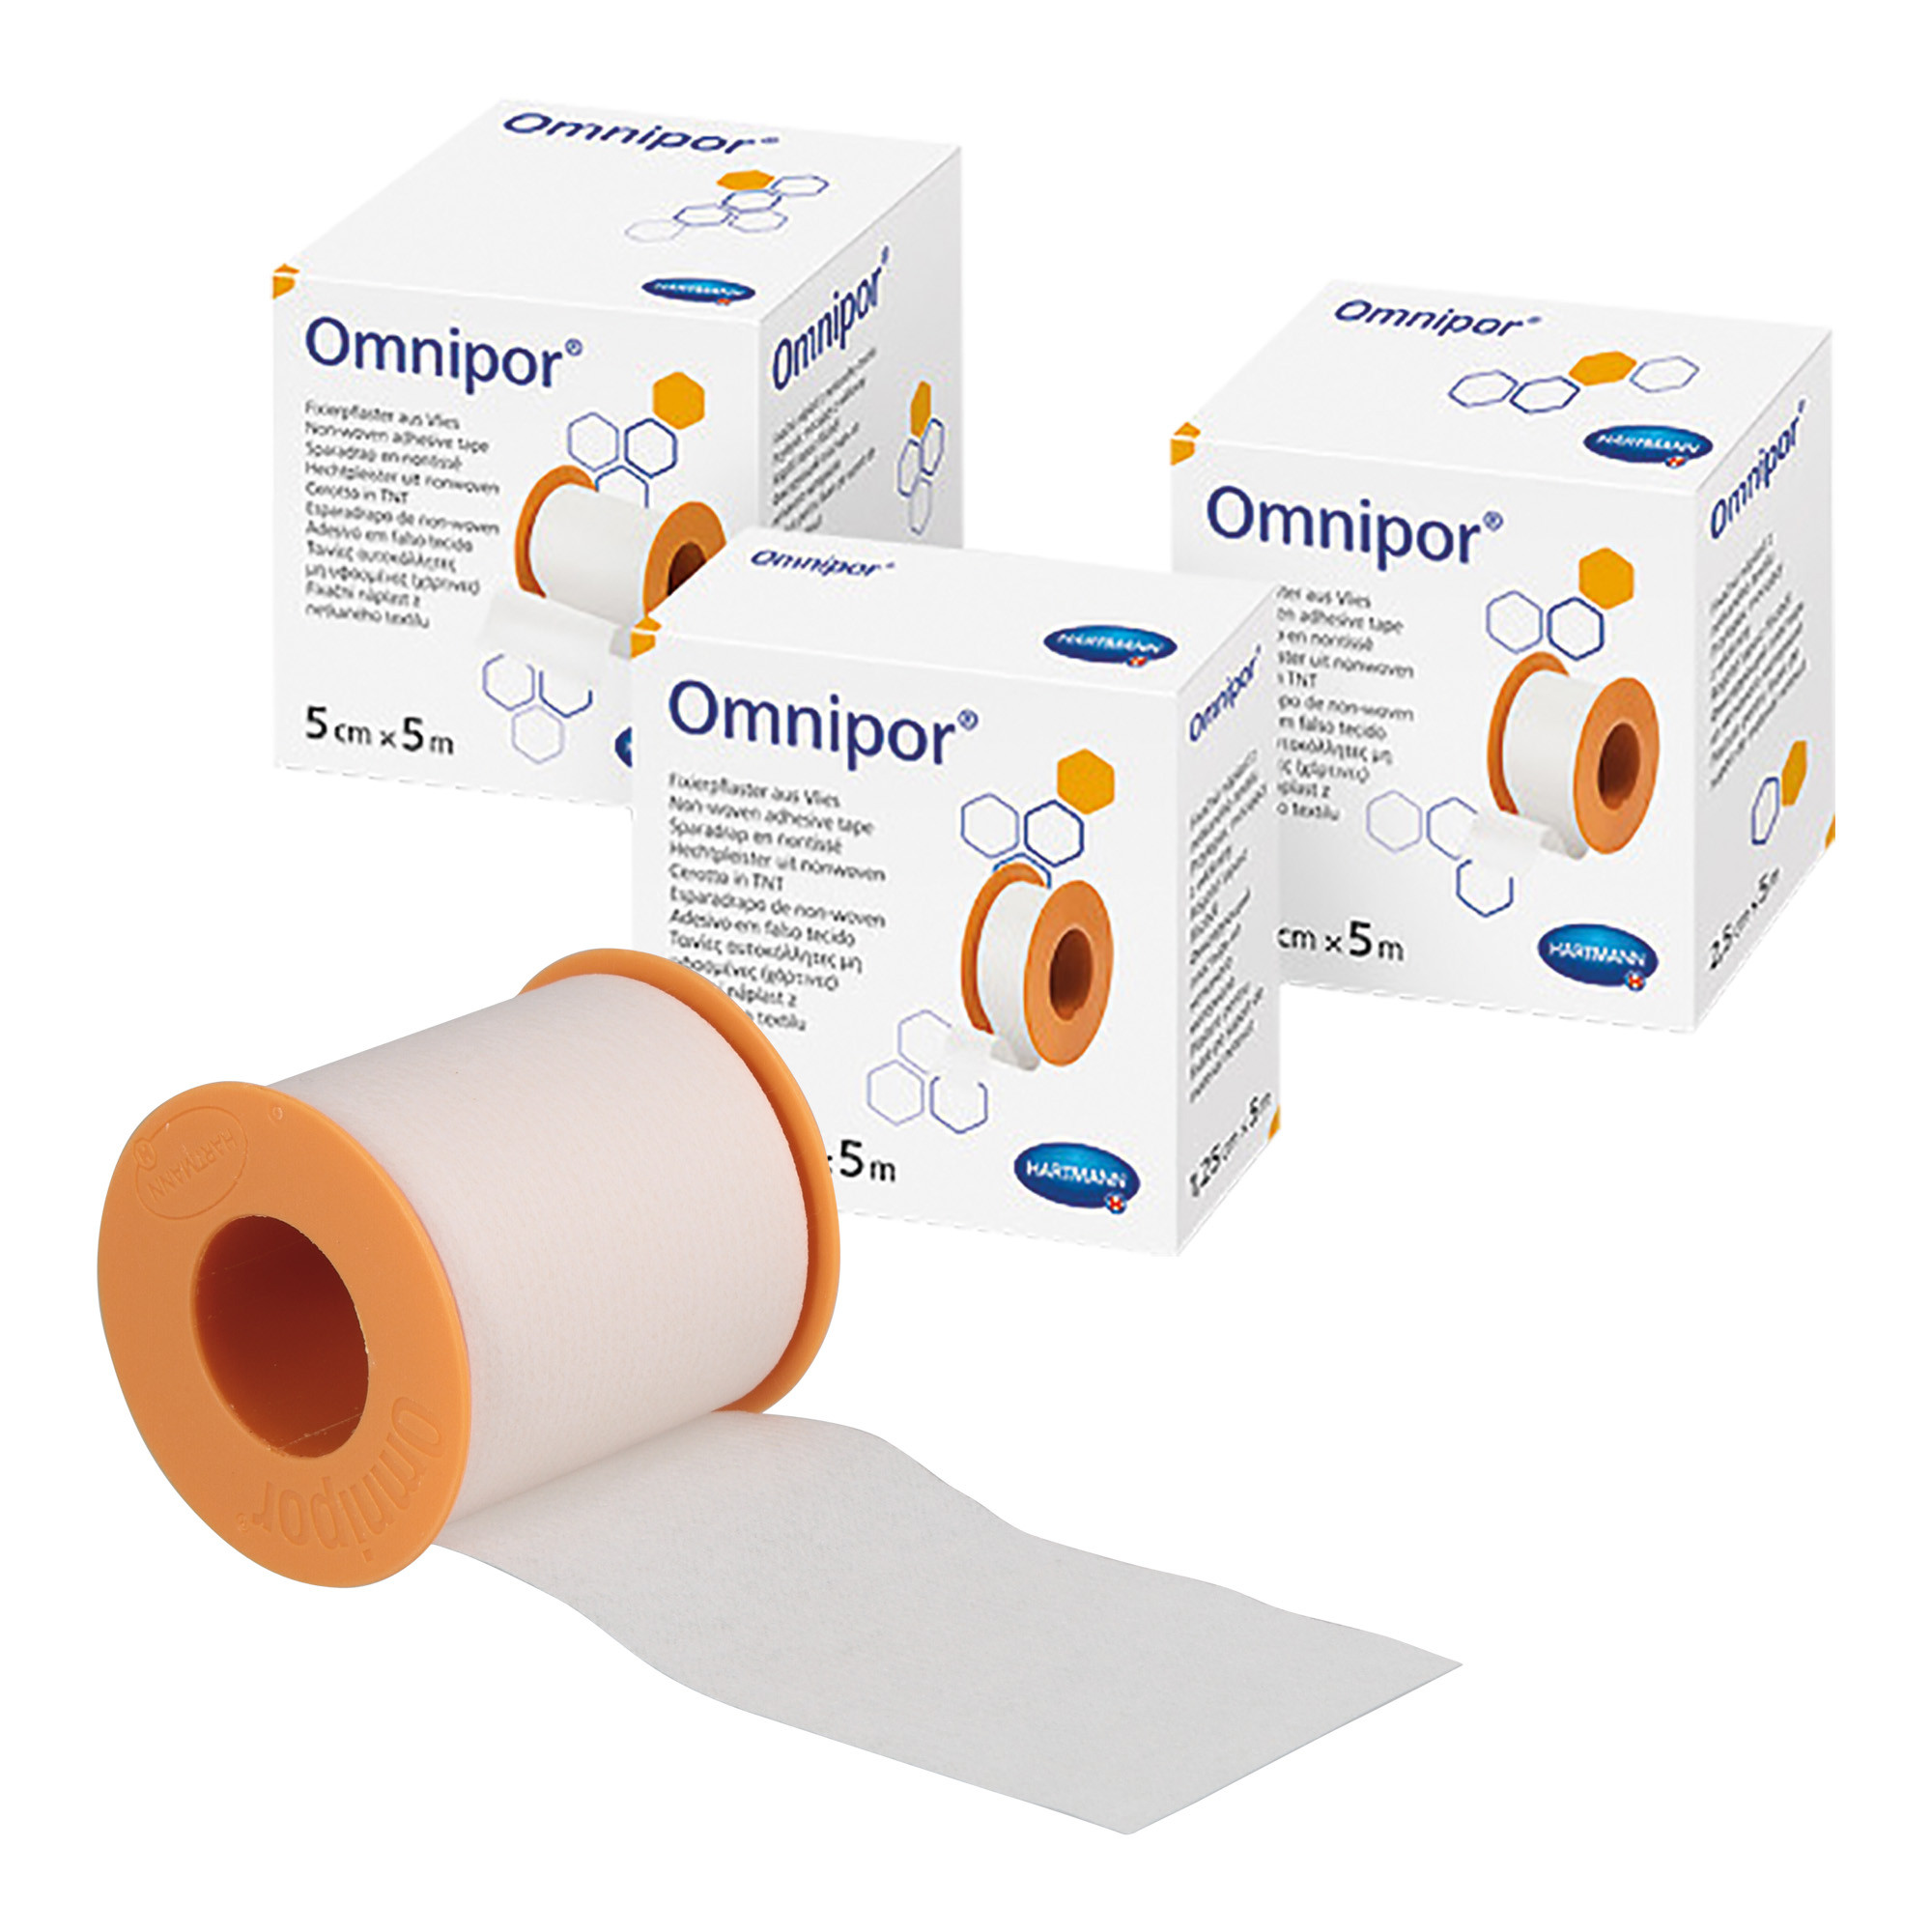 Omnipor - Sparadrap non tissé microporeux